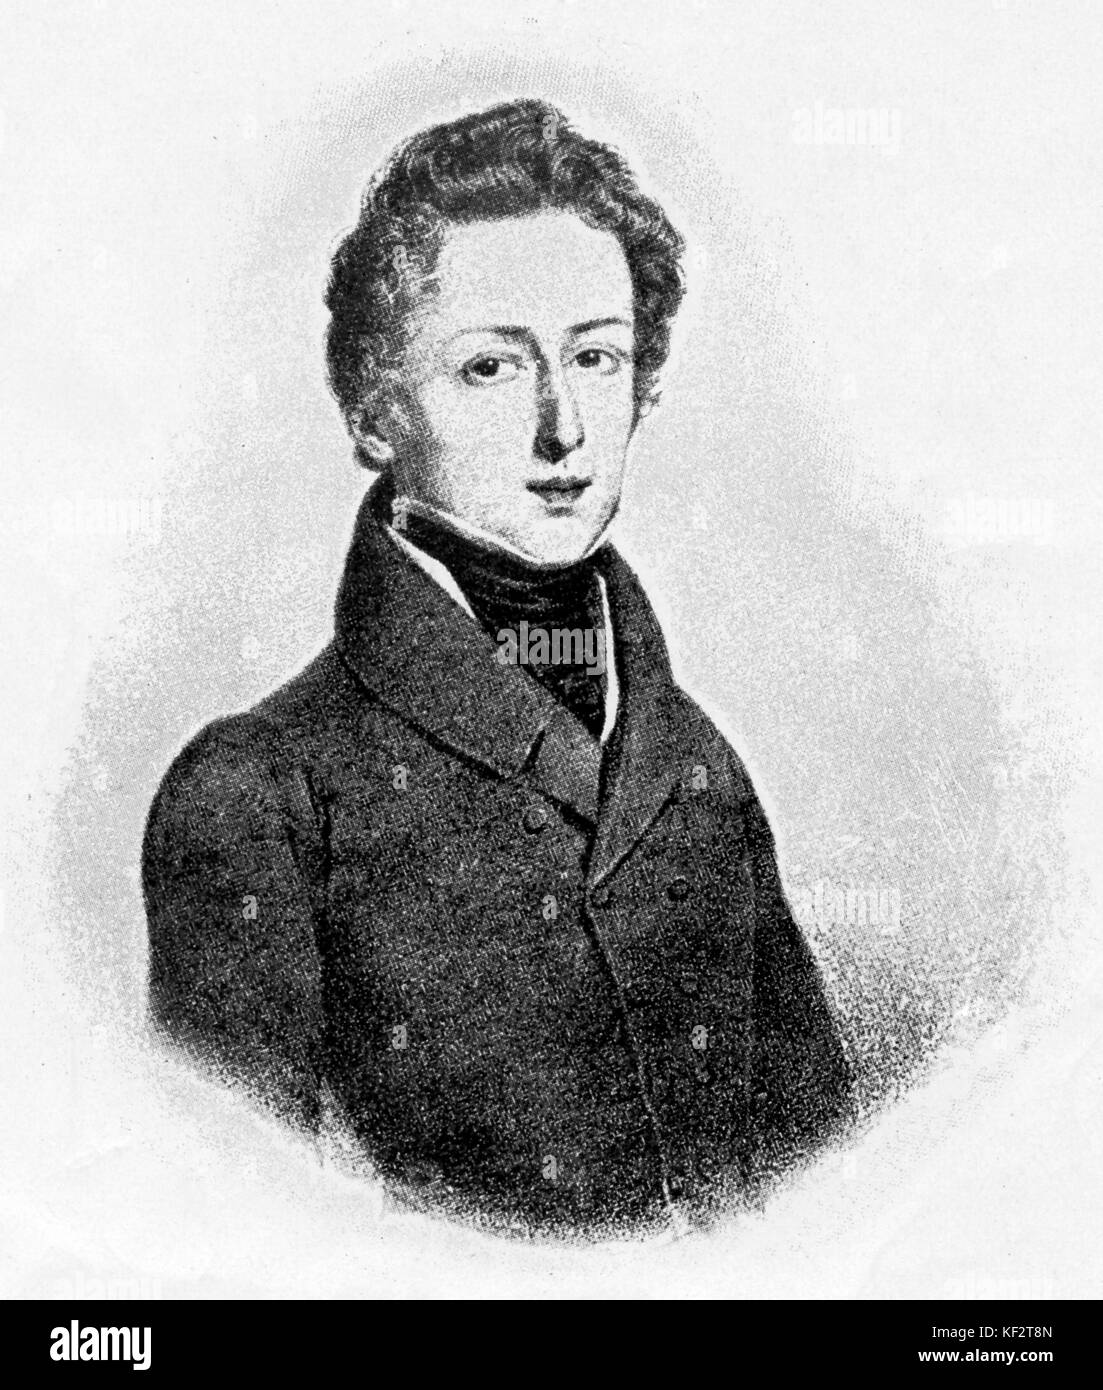 Frederic Chopin âgé de 22 ans. Le compositeur polonais, 1 mars 1810 - 17 octobre 1849 Banque D'Images